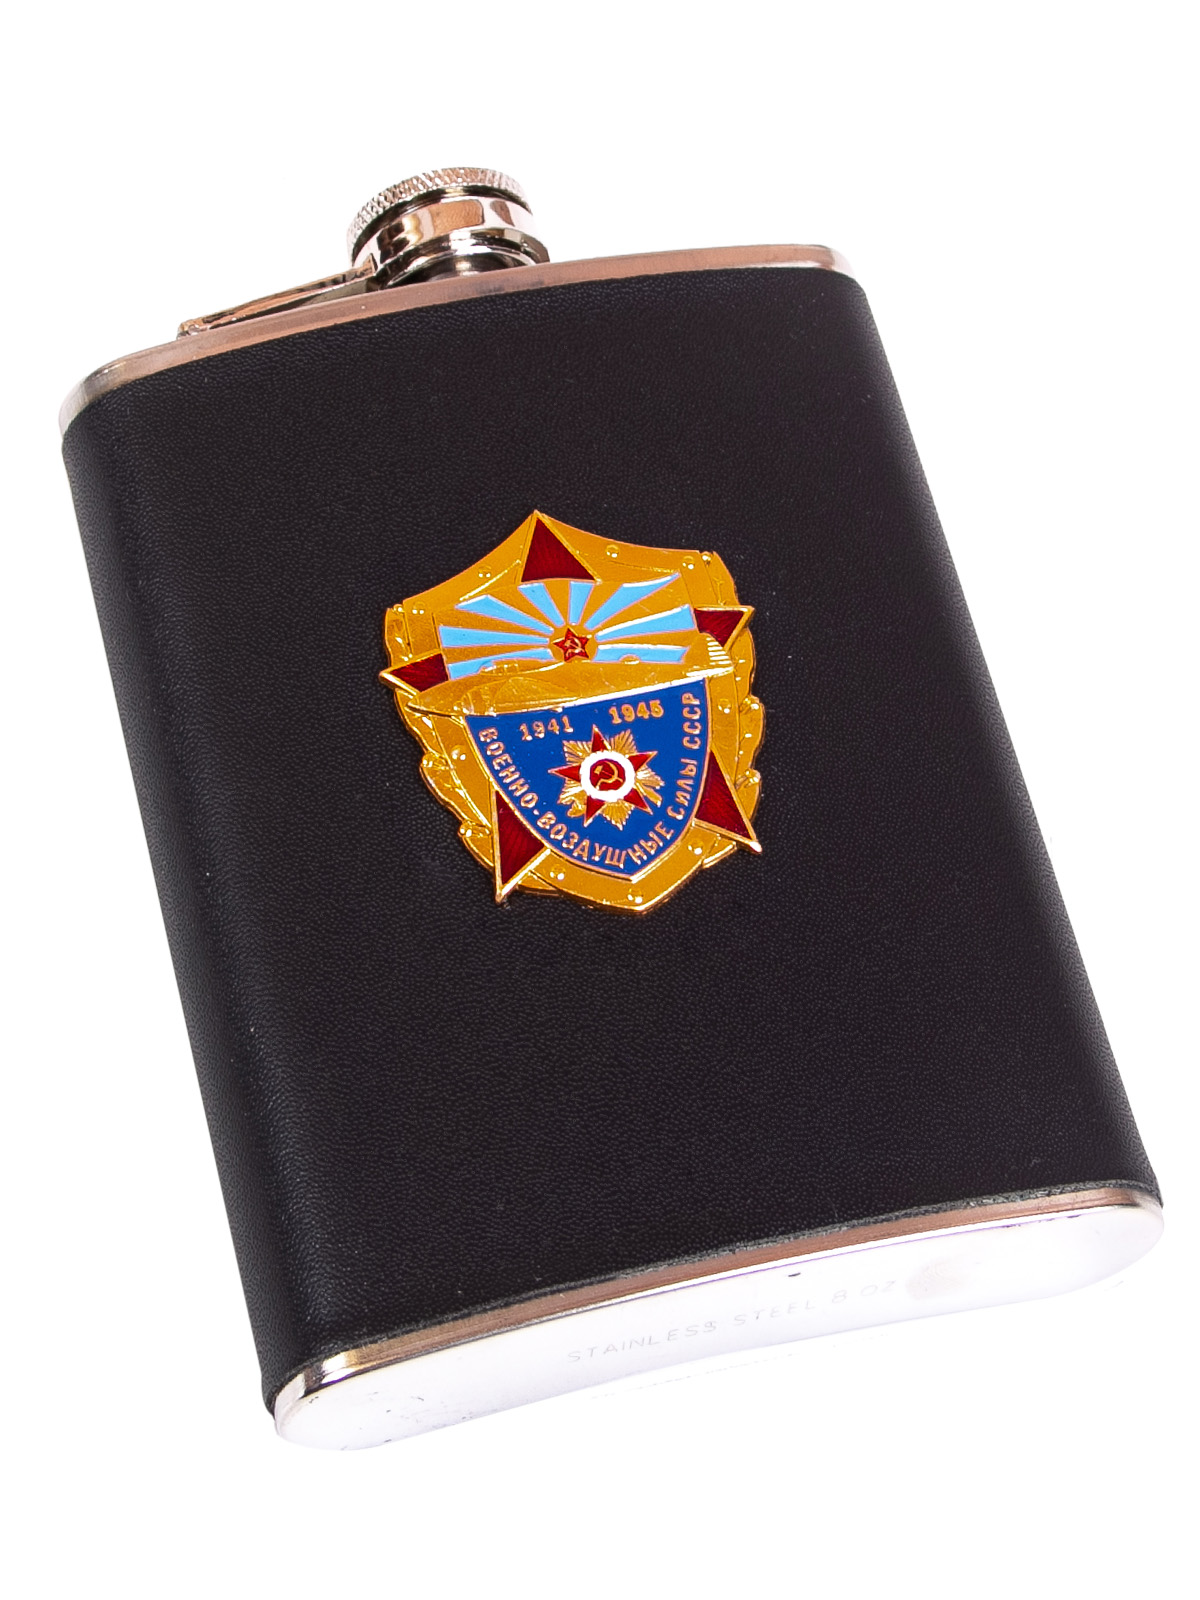 Подарочная фляжка ветерану ВВС СССР от Военпро по лучшей цене